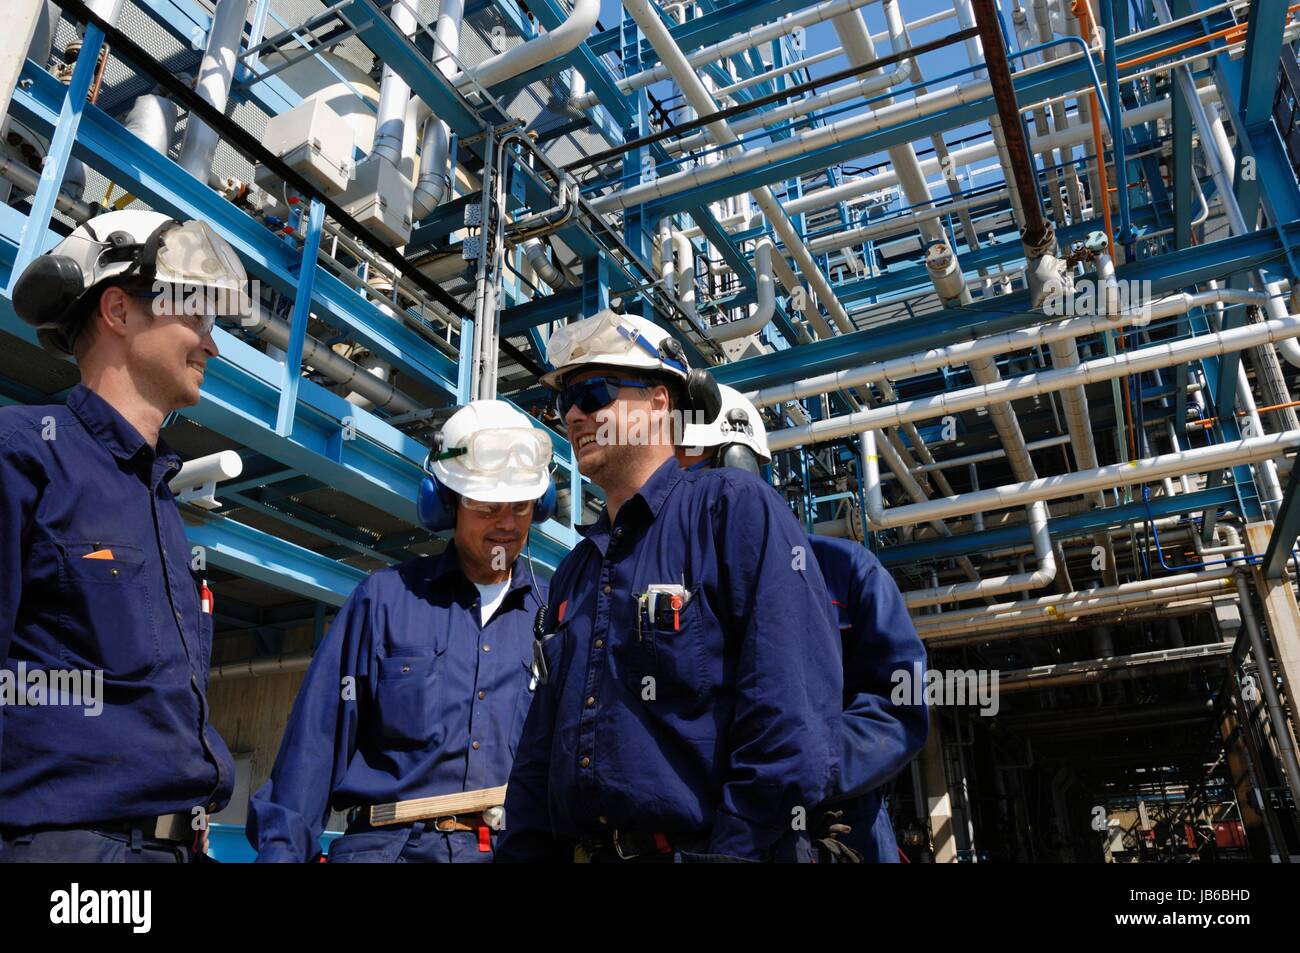 Modelo liberado. Los trabajadores industriales en la refinería de petróleo y gas. Foto de stock